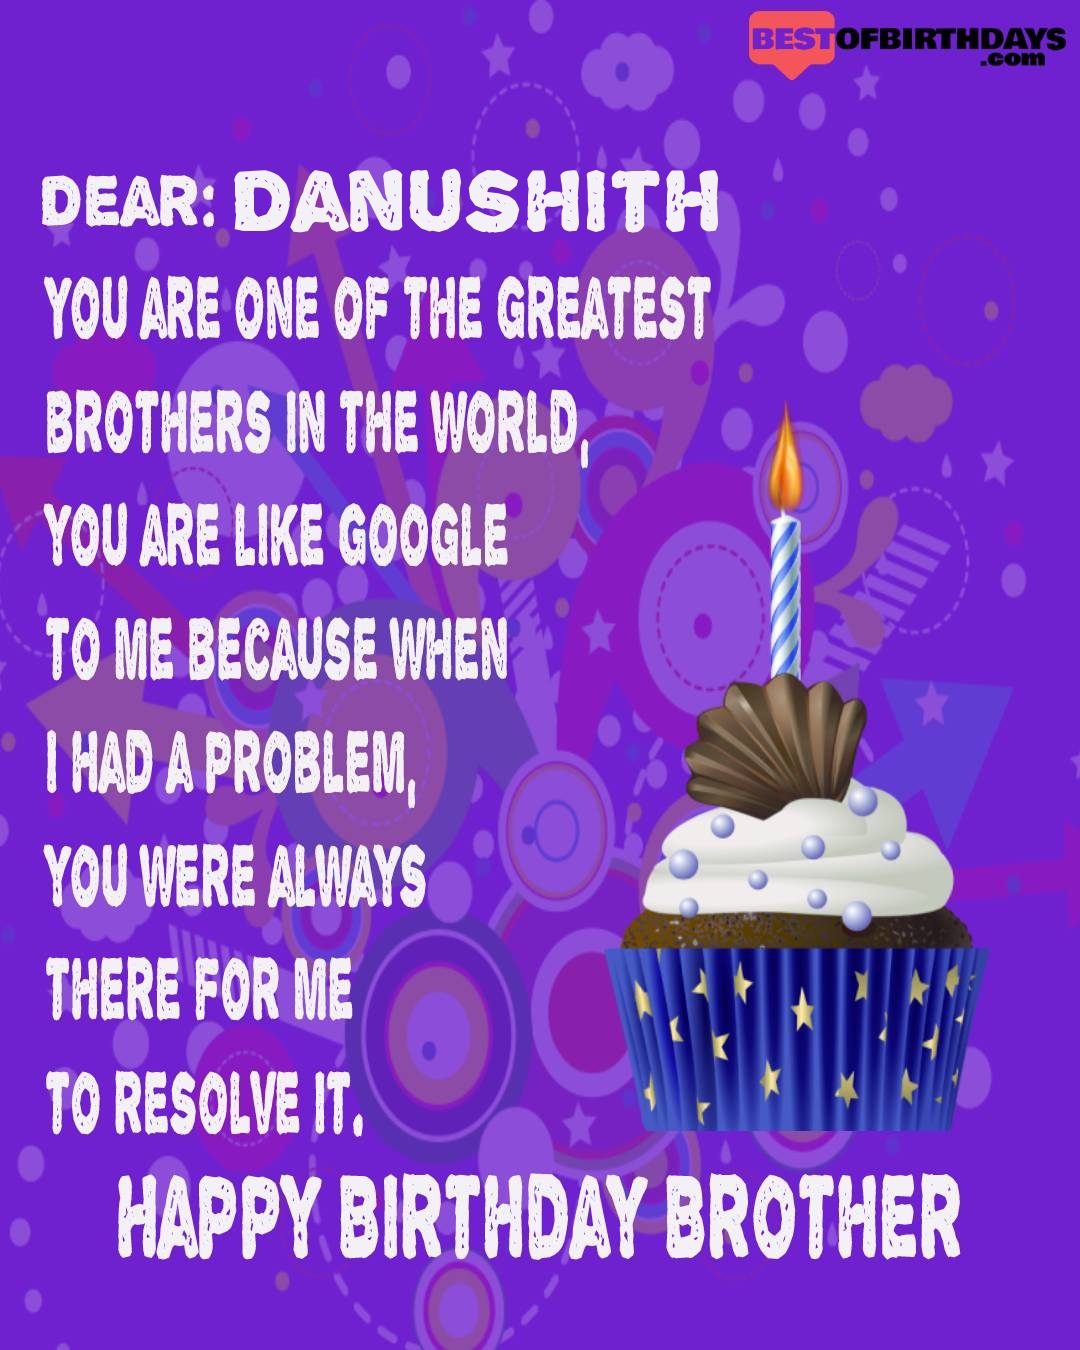 Happy birthday danushith bhai brother bro